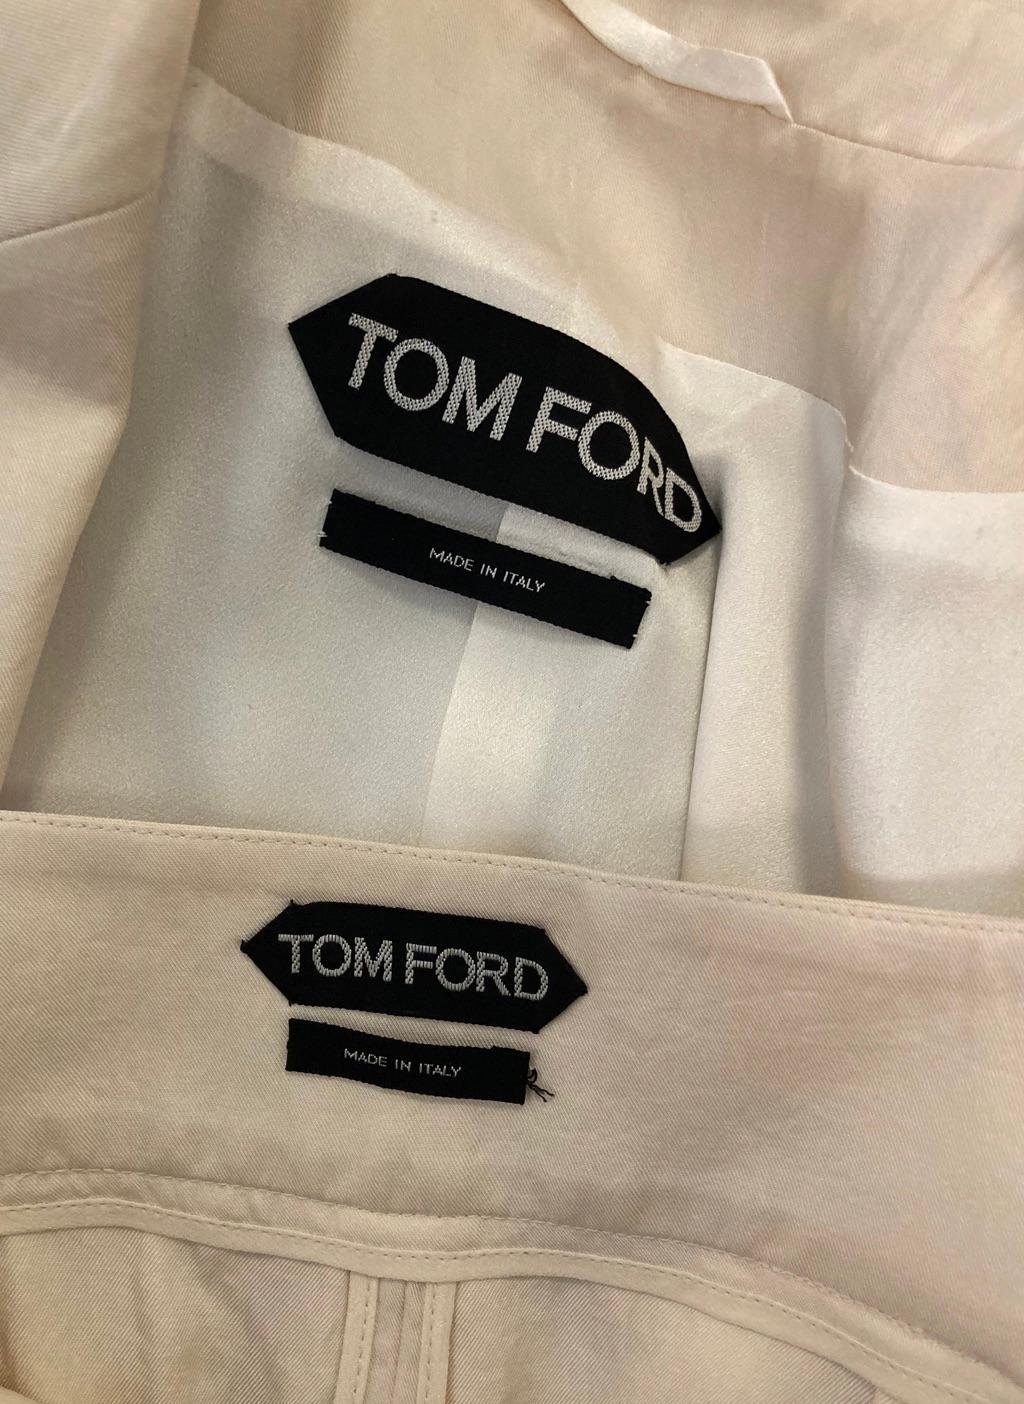 Tailleur jupe ivoire Tom Ford de la marque éponyme. Veste ivoire soyeuse de style blazer et jupe crayon assortie sous le genou. La jupe crayon est dotée d'une fermeture à glissière en métal gunmetal sur le devant, qui se referme à mi-chemin pour